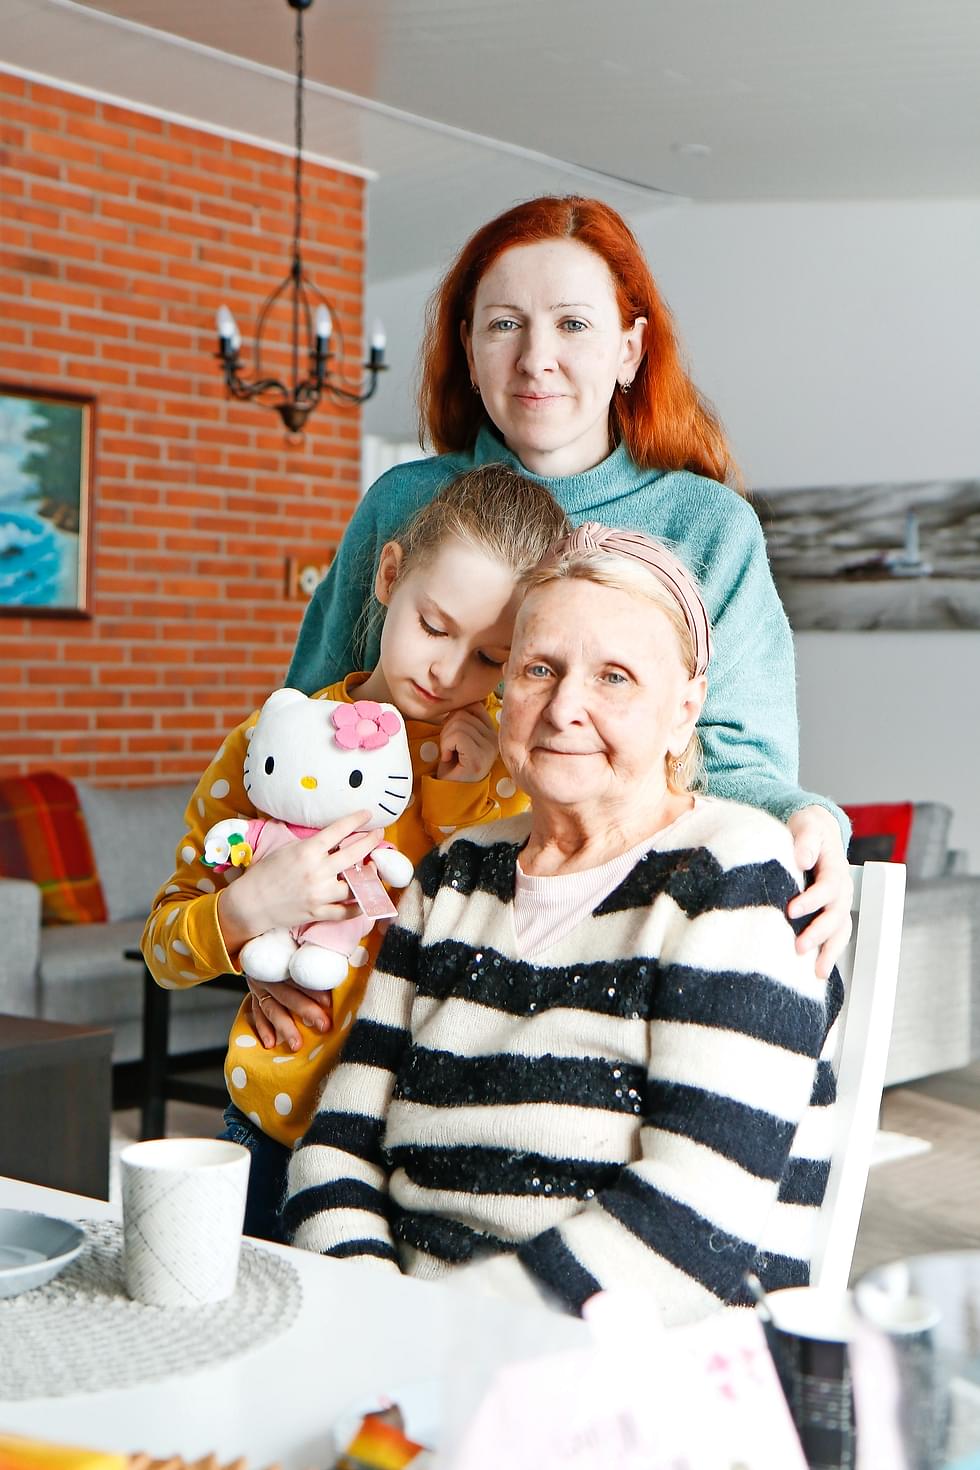 Sofia Gera ja hänen äitinsä Olena ja isoäitinsä Valentina tulivat sotaa pakoon Nurmekseen.